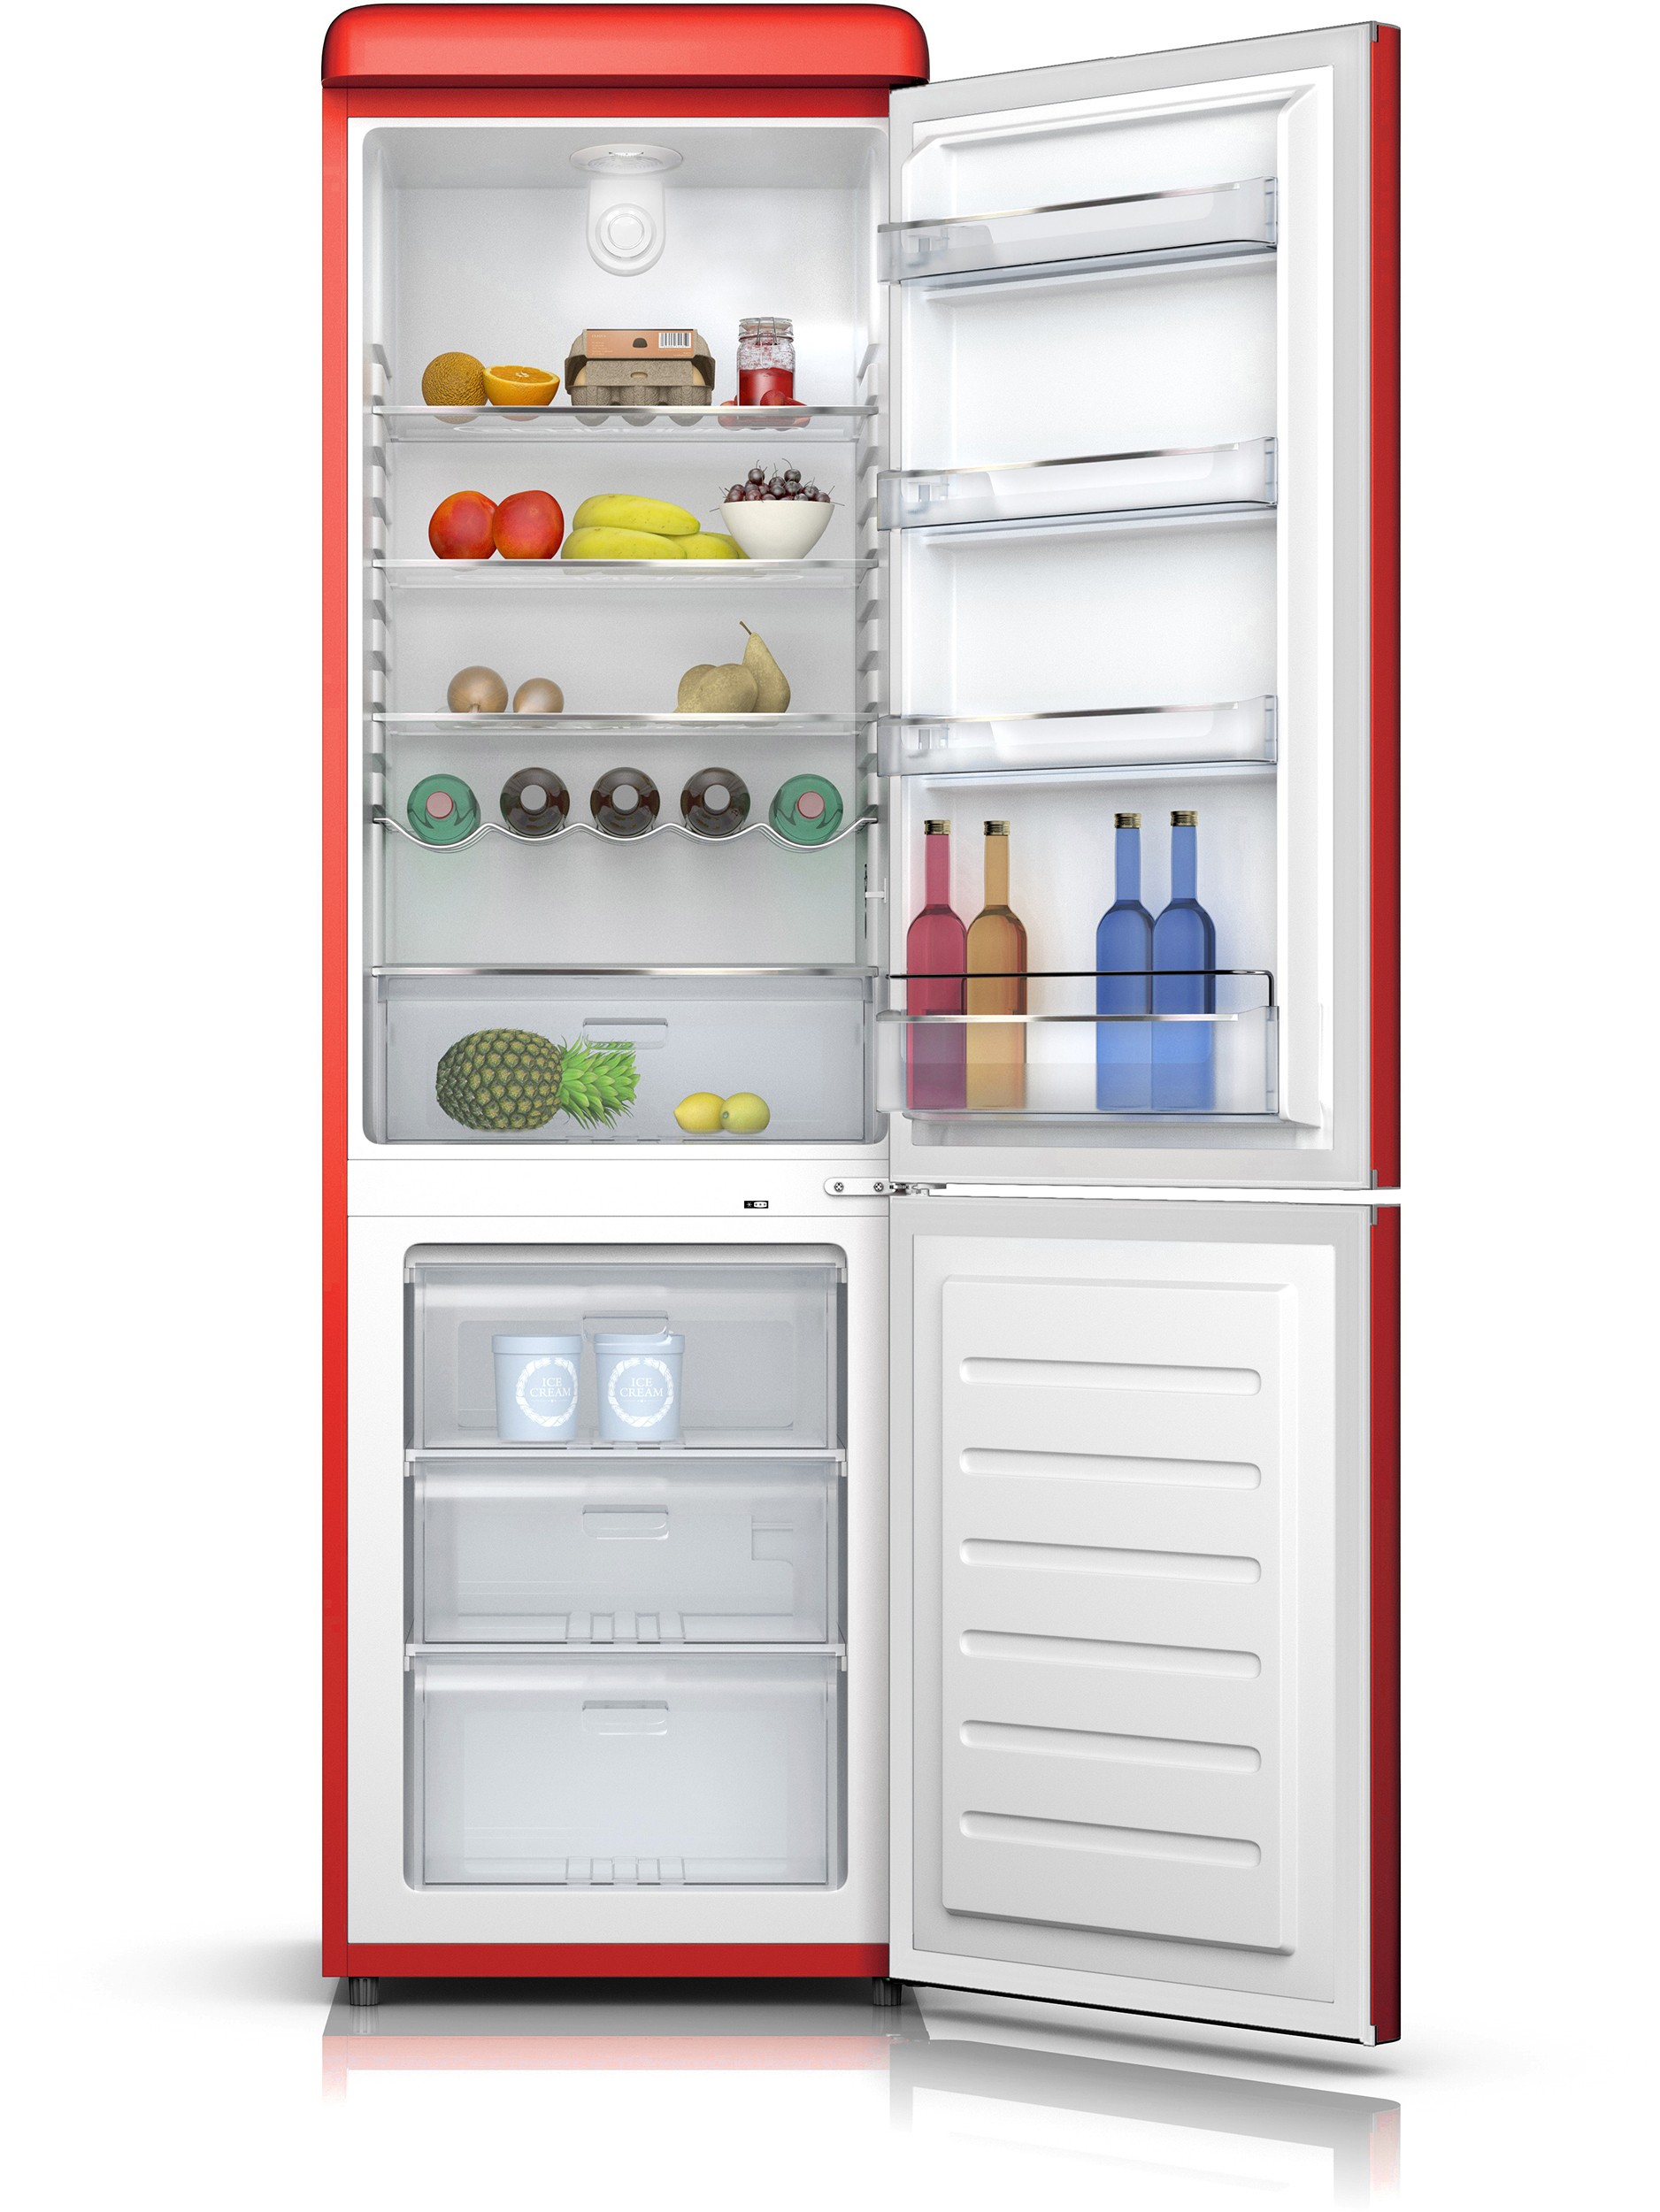 SCHNEIDER Réfrigérateur congélateur bas vintage combiné 304 L rouge - SCB300VR